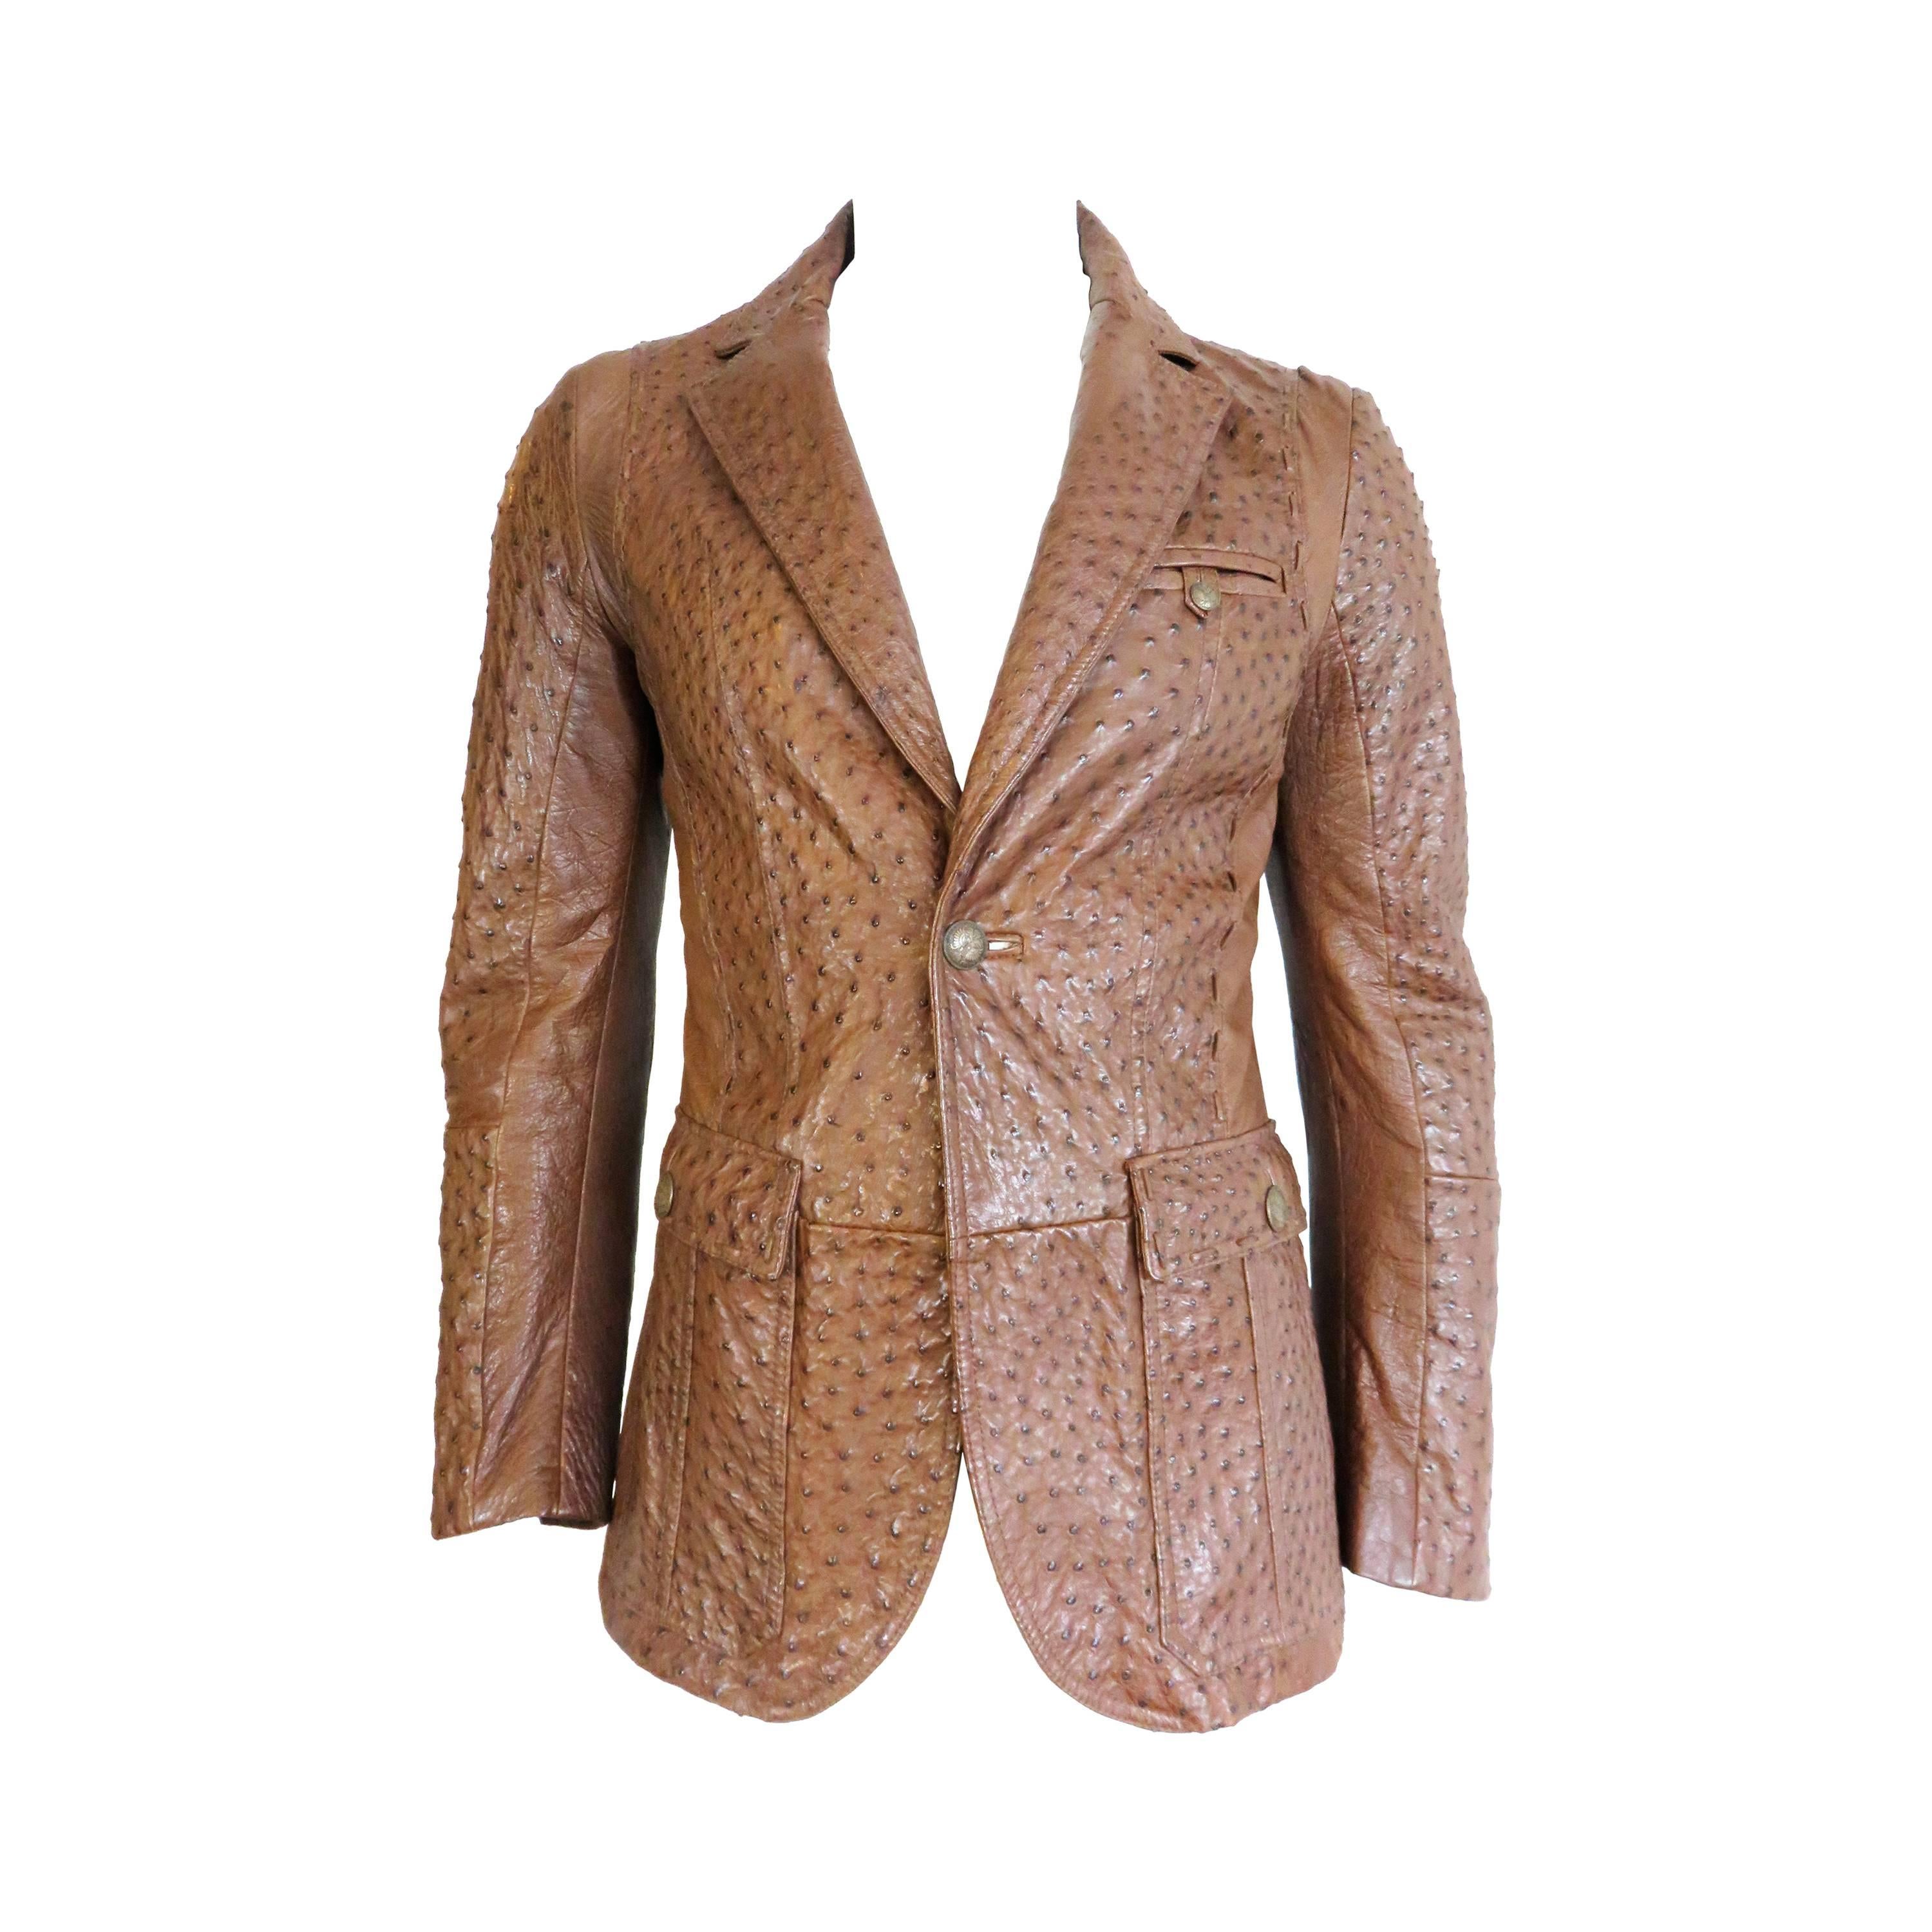 ROBERTO CAVALLI Men's cognac ostrich skin leather blazer jacket